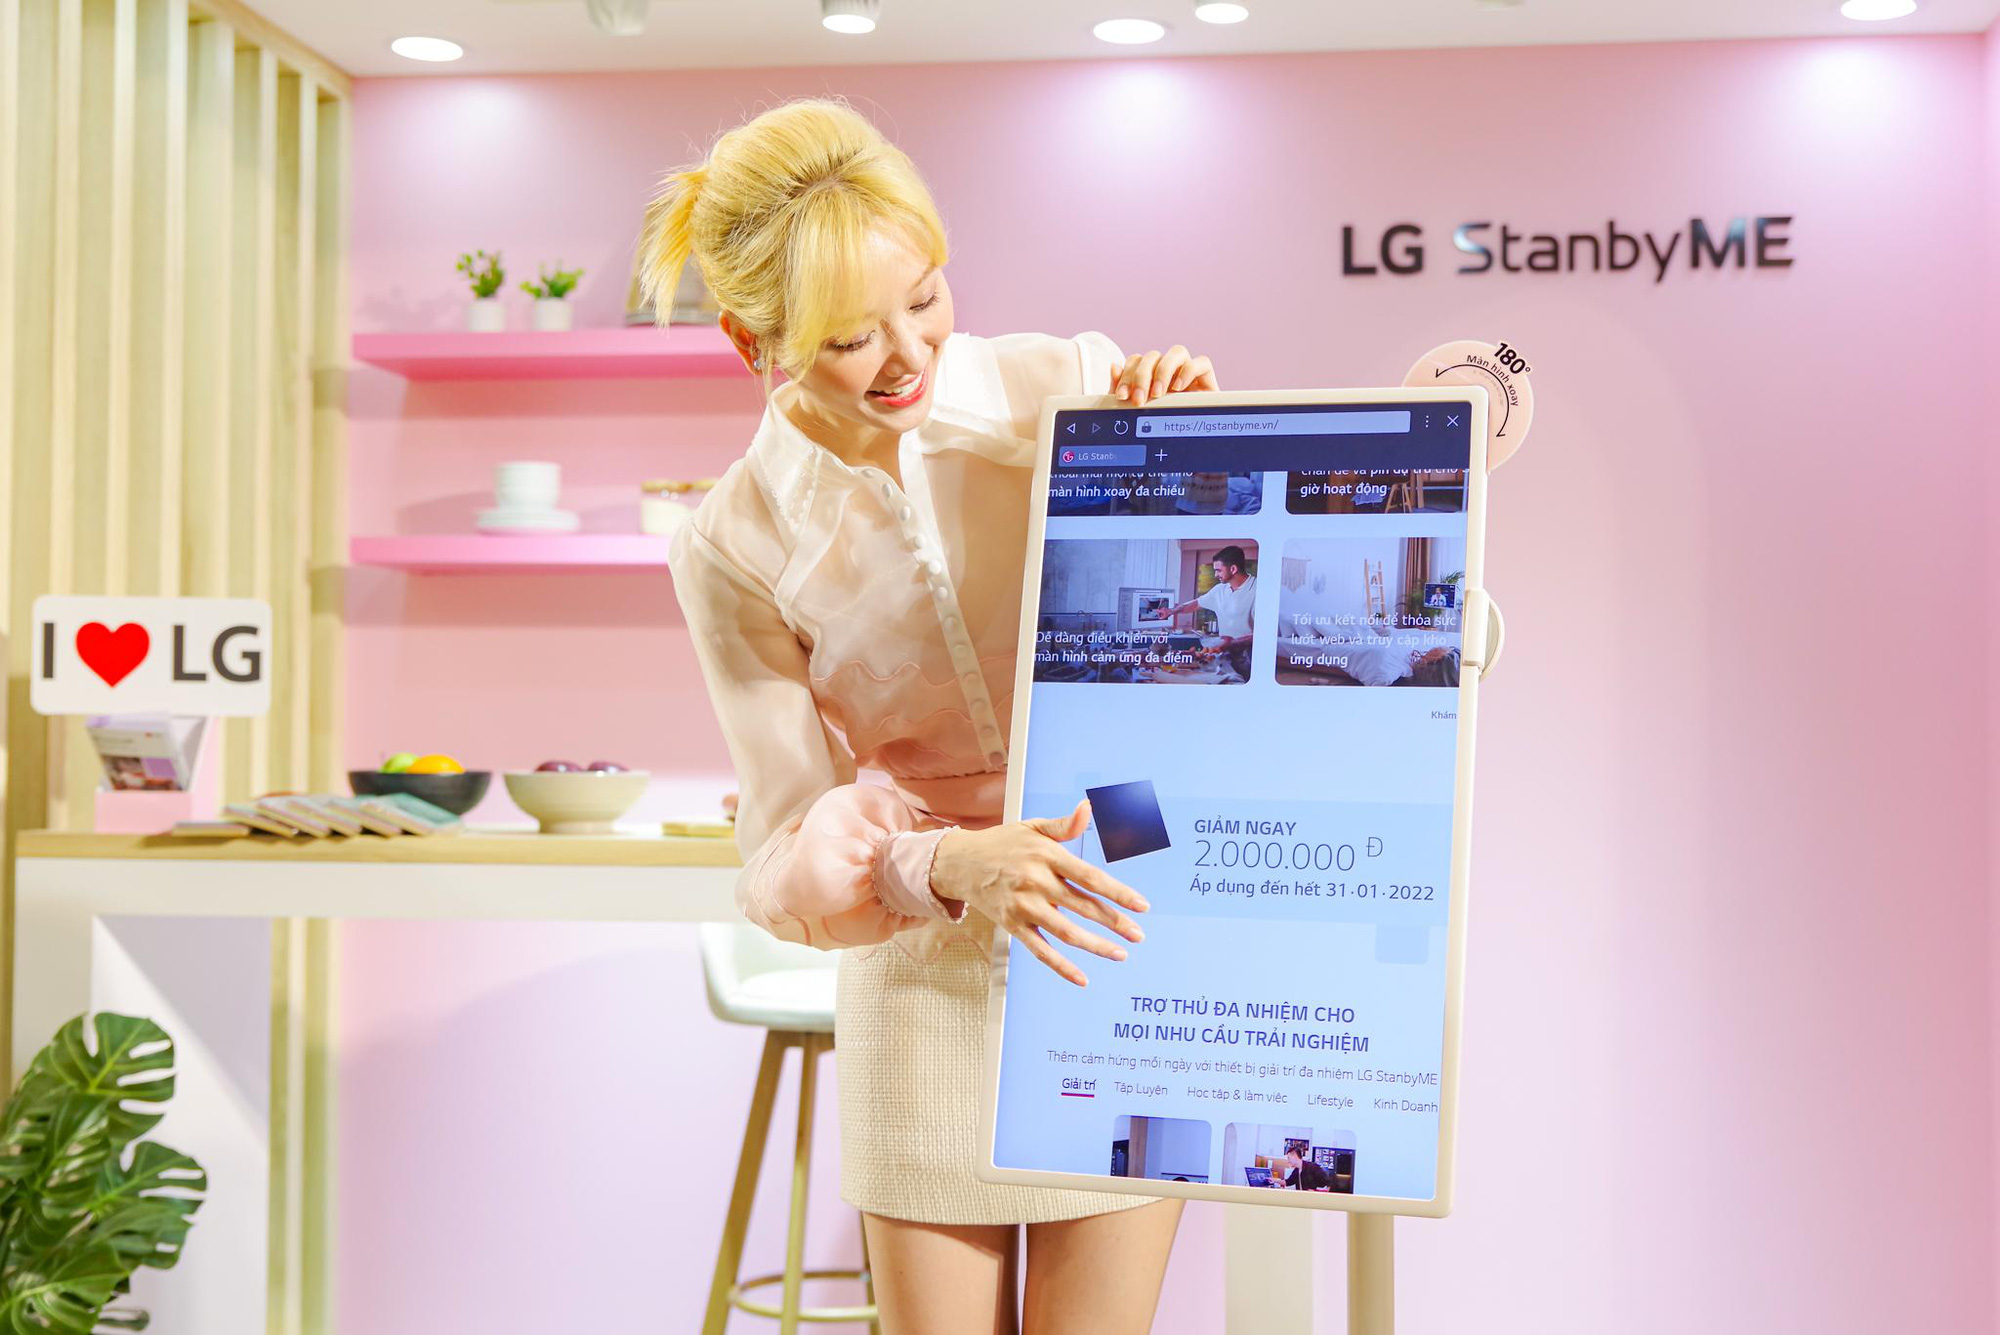 Hari Won tròn mắt bất ngờ khi lần đầu trải nghiệm LG StanbyME, thiết bị giải trí không dây đình đám bậc nhất hiện nay - Ảnh 6.